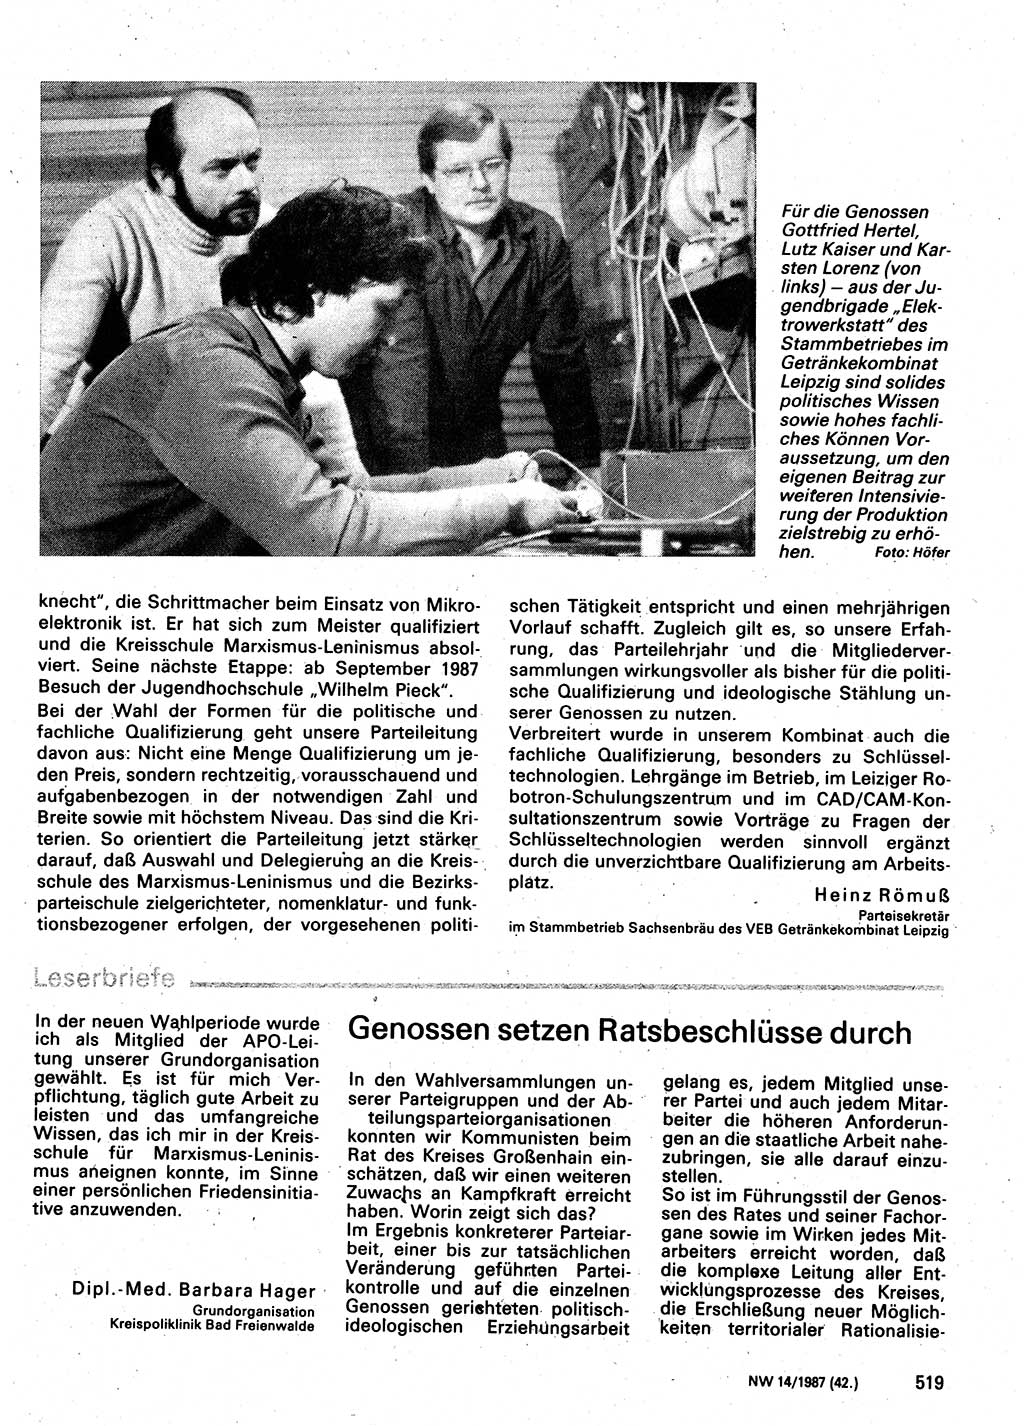 Neuer Weg (NW), Organ des Zentralkomitees (ZK) der SED (Sozialistische Einheitspartei Deutschlands) für Fragen des Parteilebens, 42. Jahrgang [Deutsche Demokratische Republik (DDR)] 1987, Seite 519 (NW ZK SED DDR 1987, S. 519)